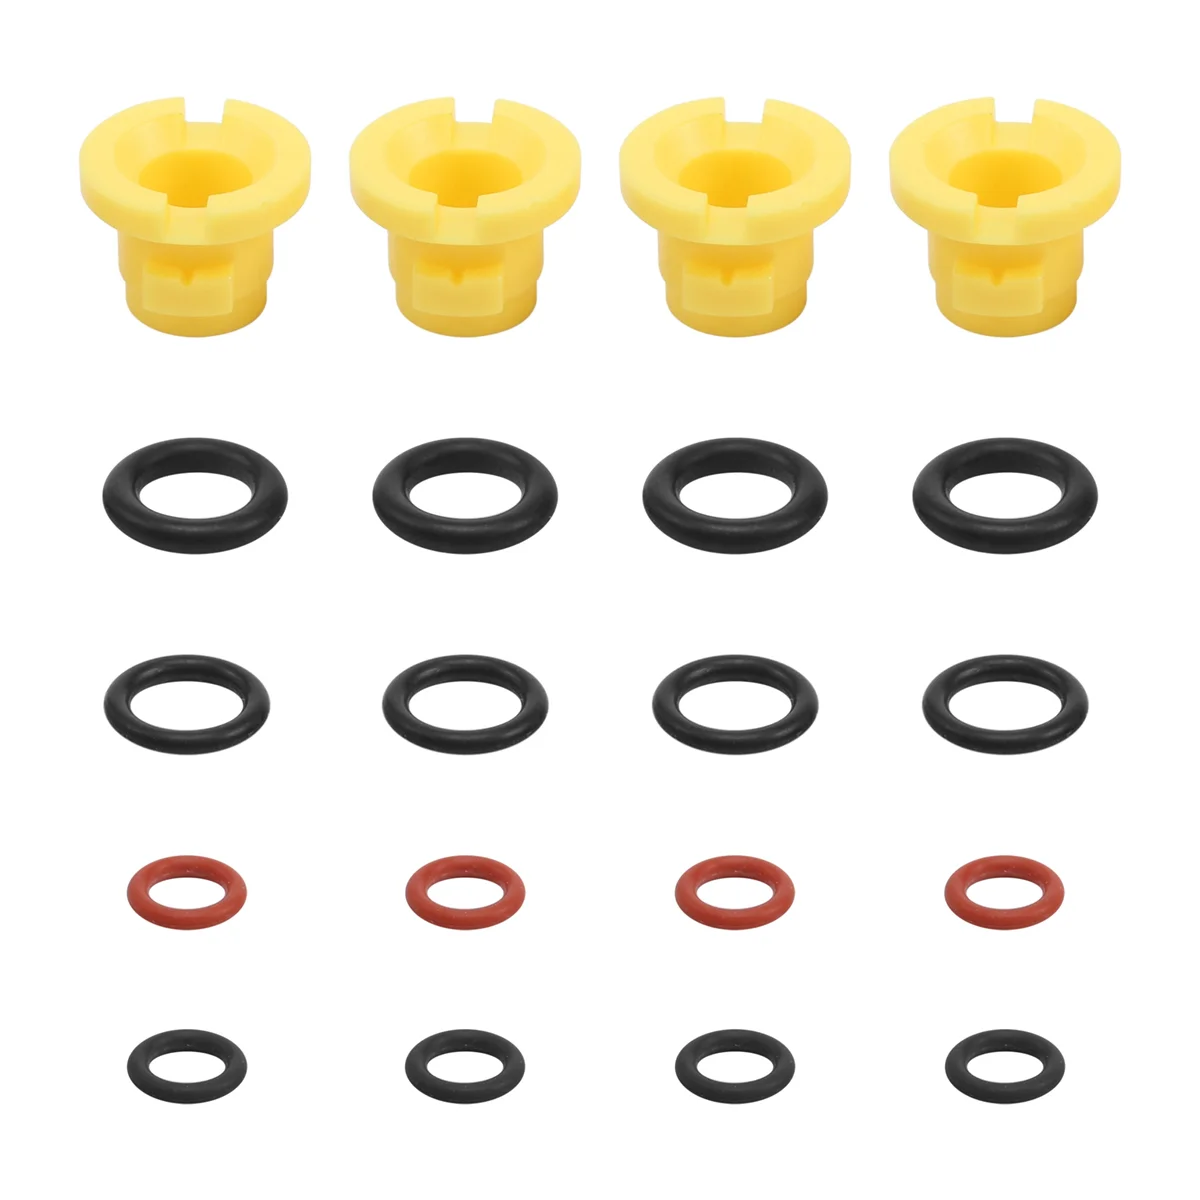 

Уплотнительное кольцо для шланга Karcher, запасное уплотнительное кольцо 2,640-729,0, резиновое уплотнительное кольцо для мойки K2, K3, K4, K5, K6, K7 A